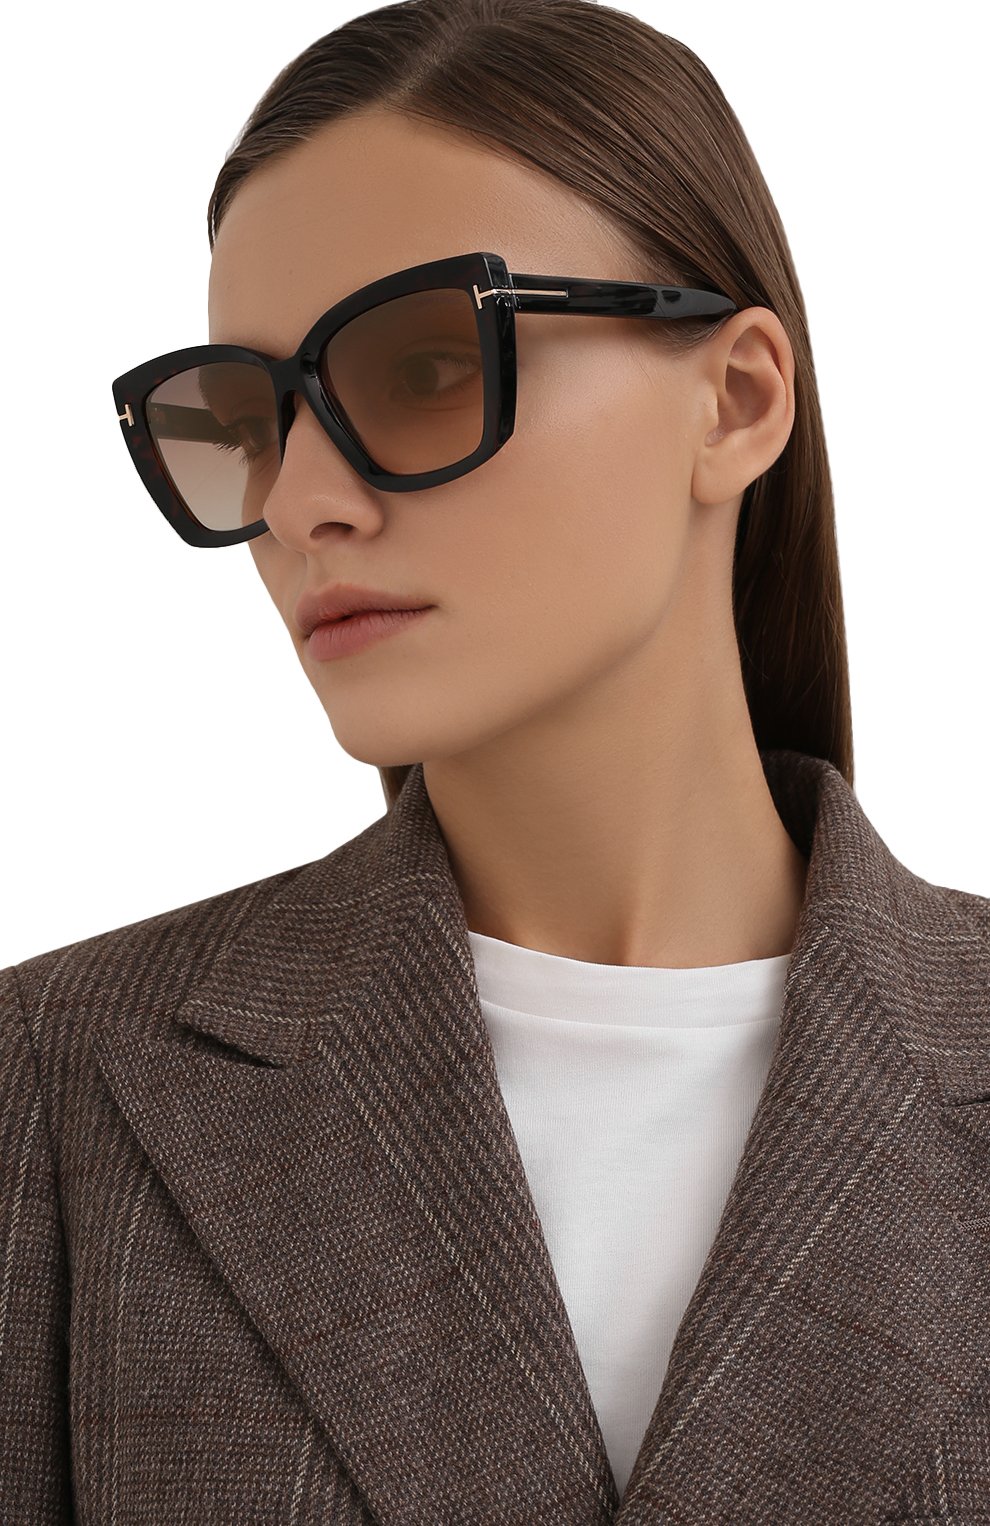 Женские темно-коричневые солнцезащитные очки TOM FORD купить в  интернет-магазине ЦУМ, арт. TF920 52G